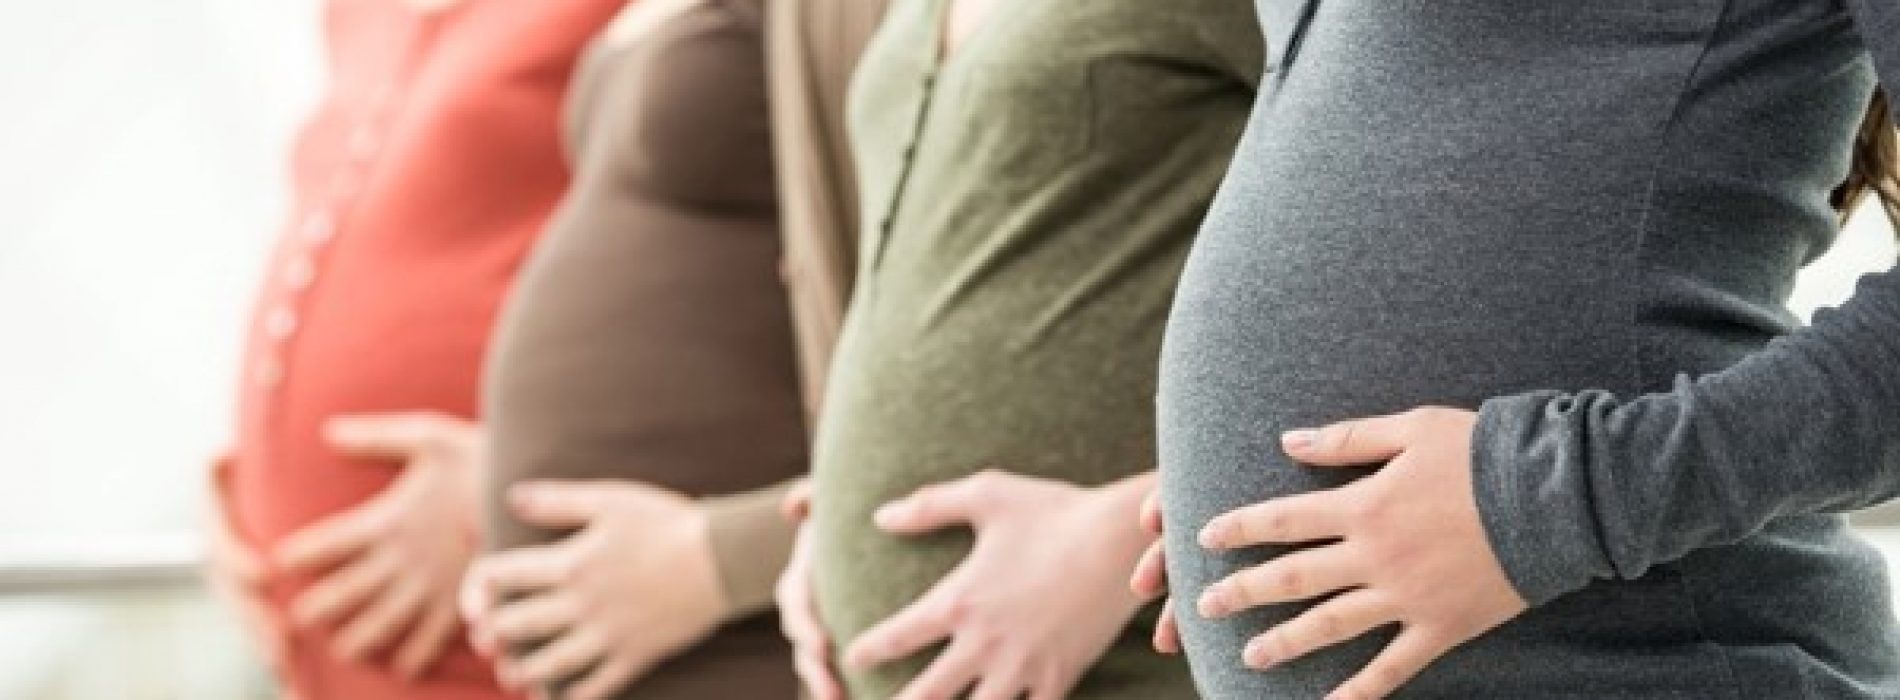 25至29歲黃金懷孕期 寶寶先天缺陷少